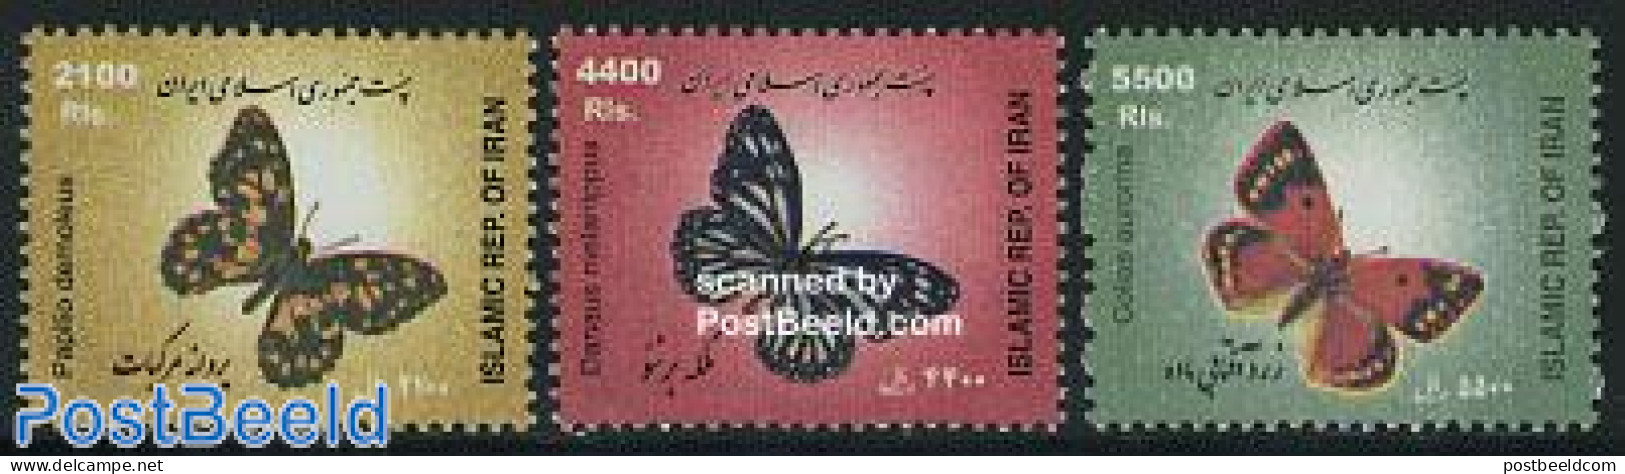 Iran/Persia 2005 Definitives, Butterflies 3v, Mint NH, Nature - Butterflies - Iran